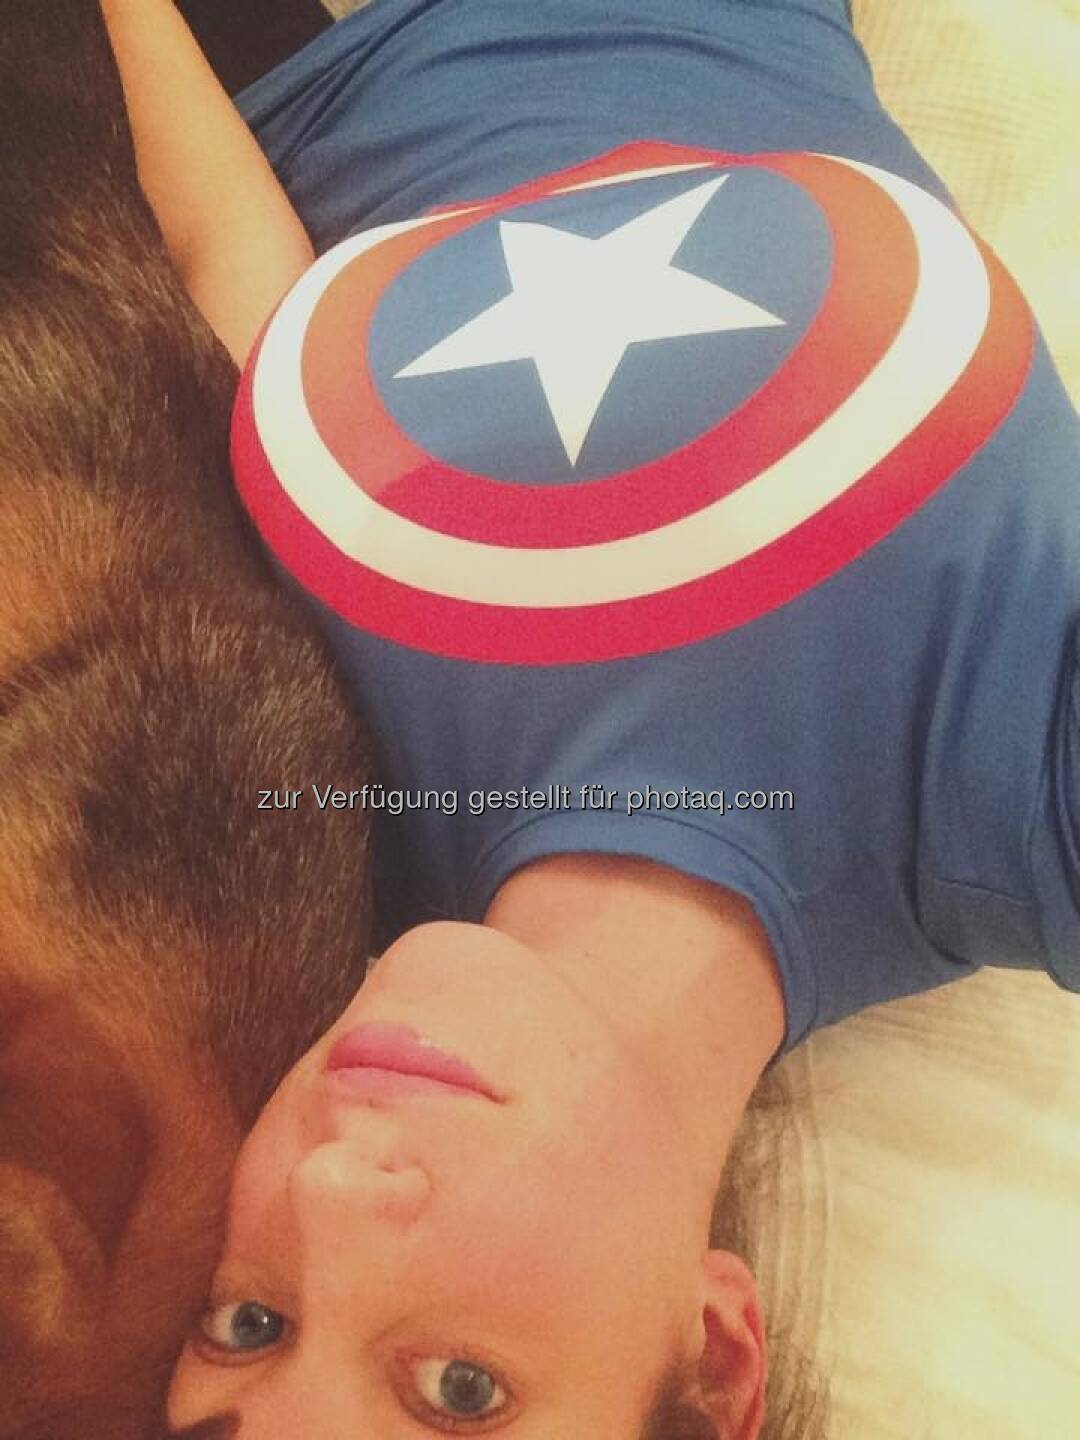 Yes Carina Captain America